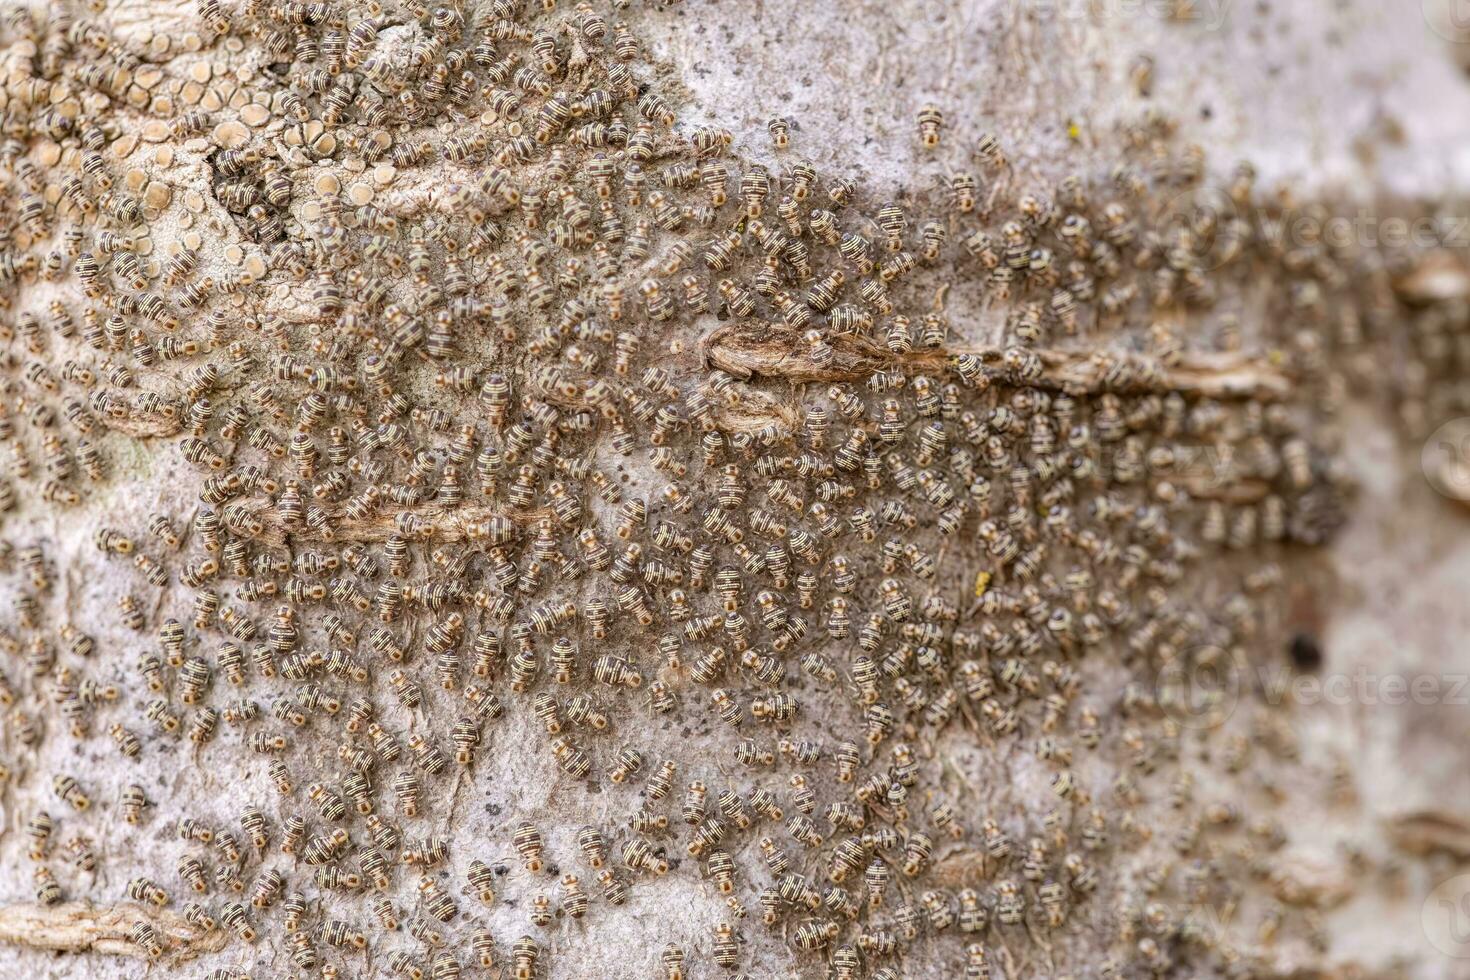 små löss insekter på en trunk foto